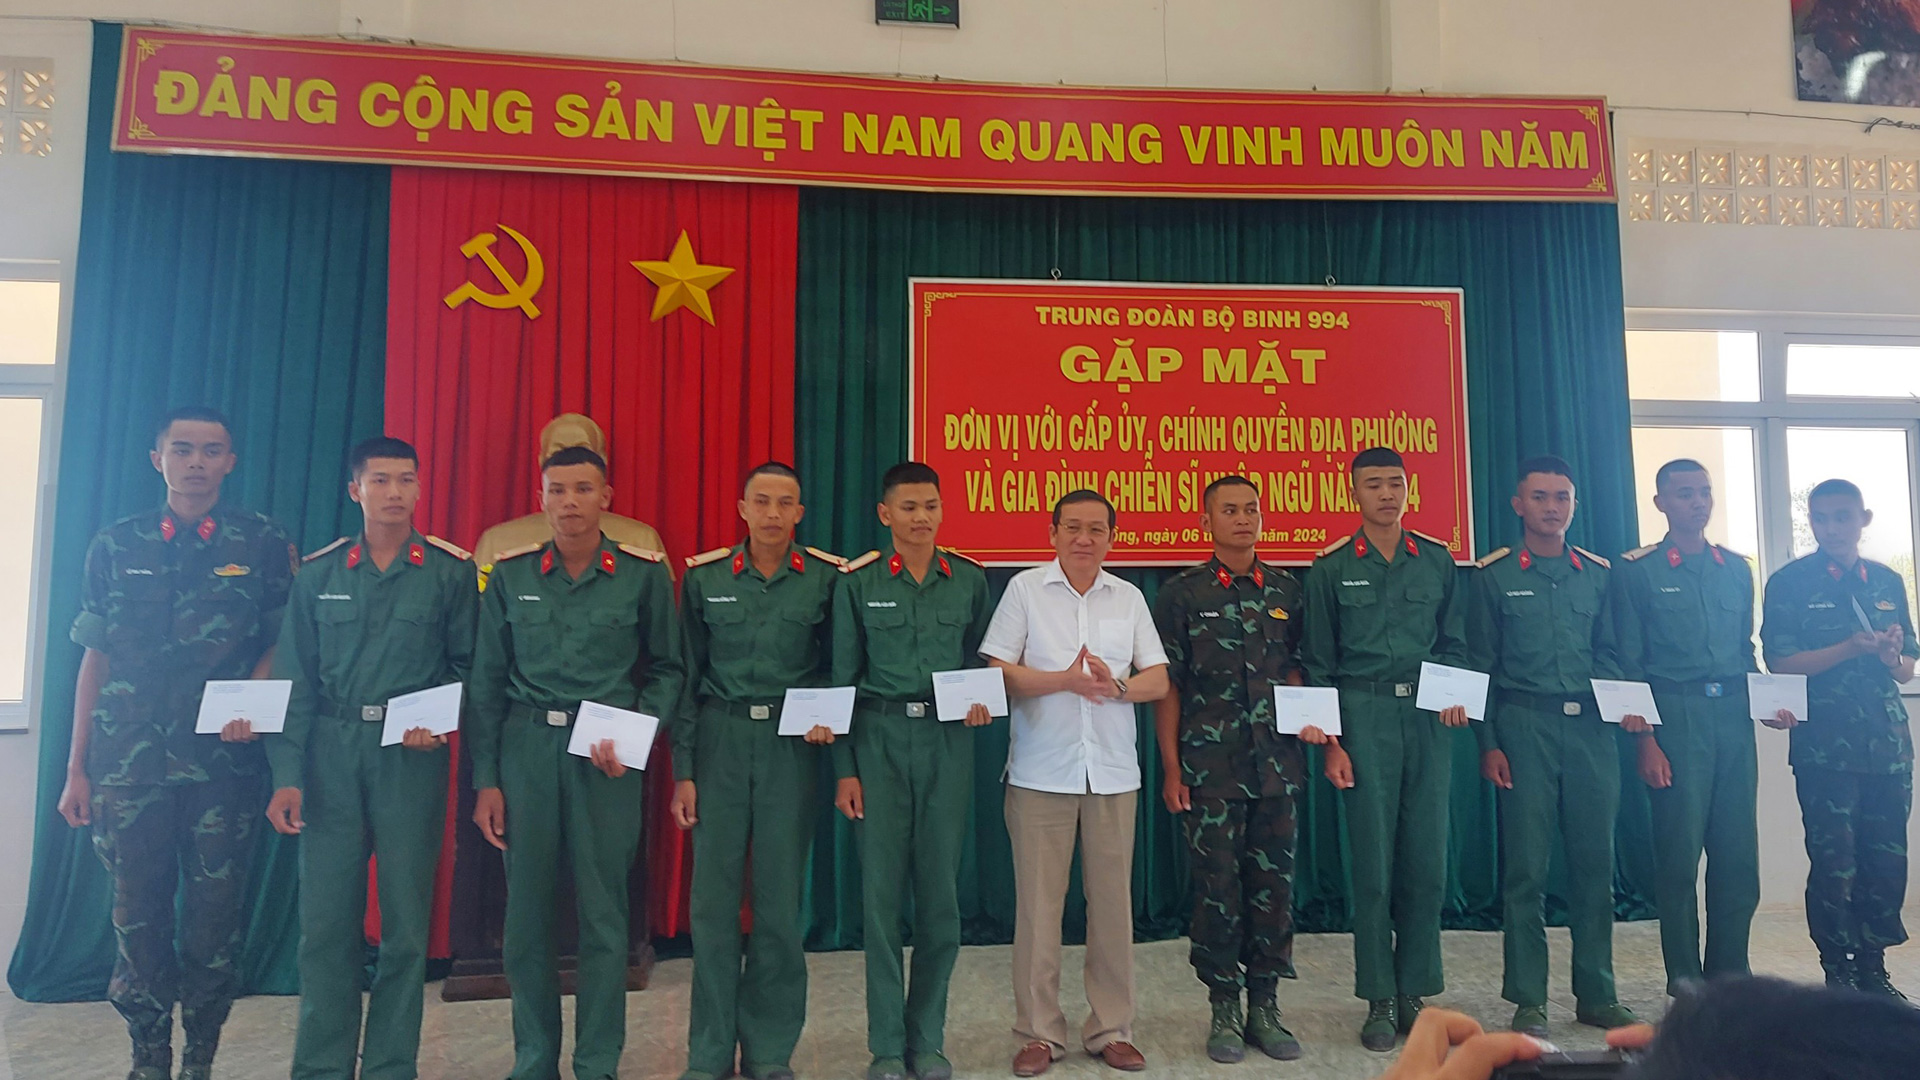 Lãnh đạo địa phương thăm hỏi CSM tại Trung đoàn Bộ binh 994